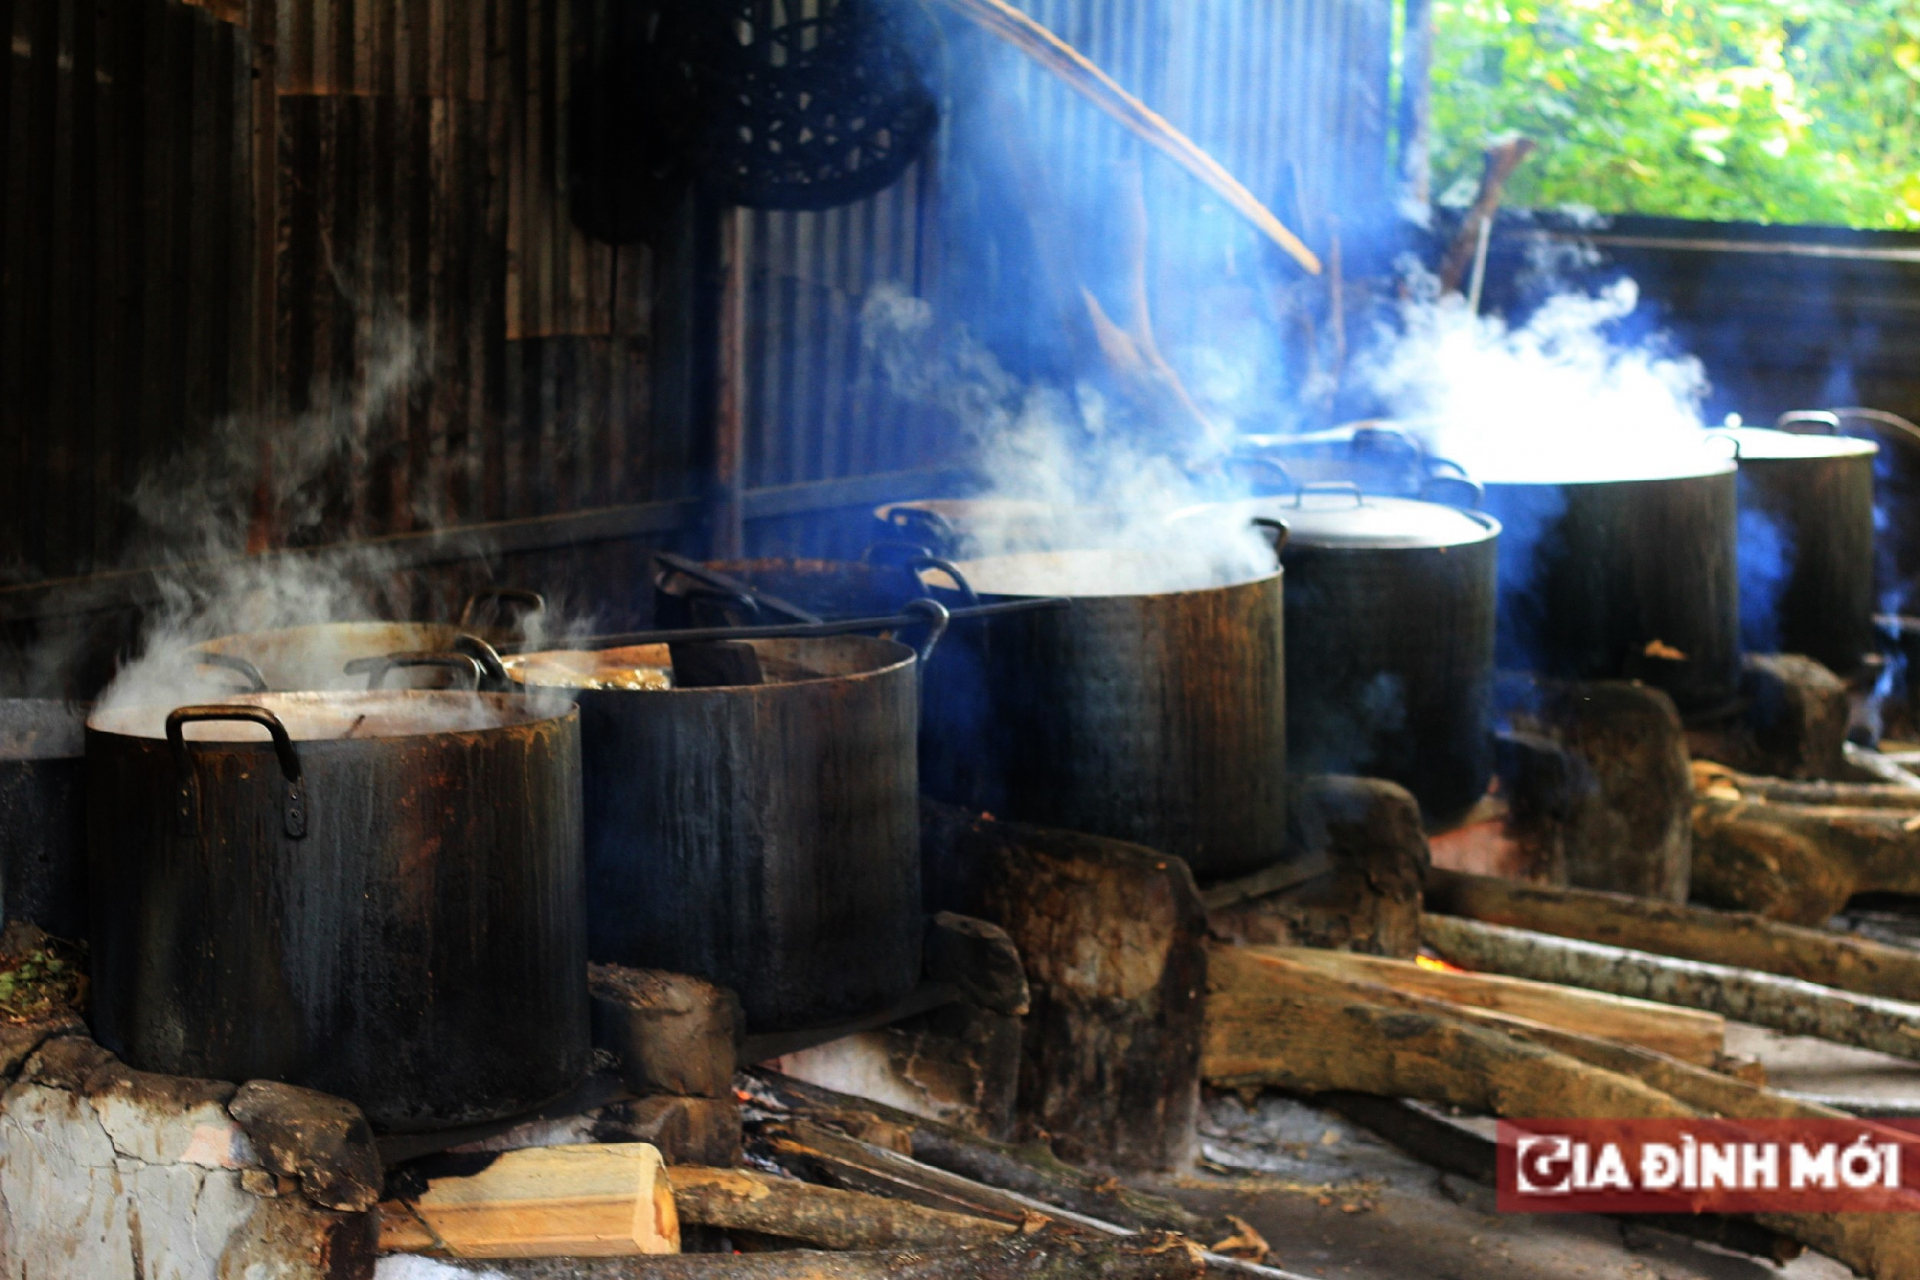 Nghề làm thuốc nam tại Yên Sơn đang ngày càng phát triển, đem lại nhiều thay đổi cho cuộc sống đồng bào dân tộc Dao